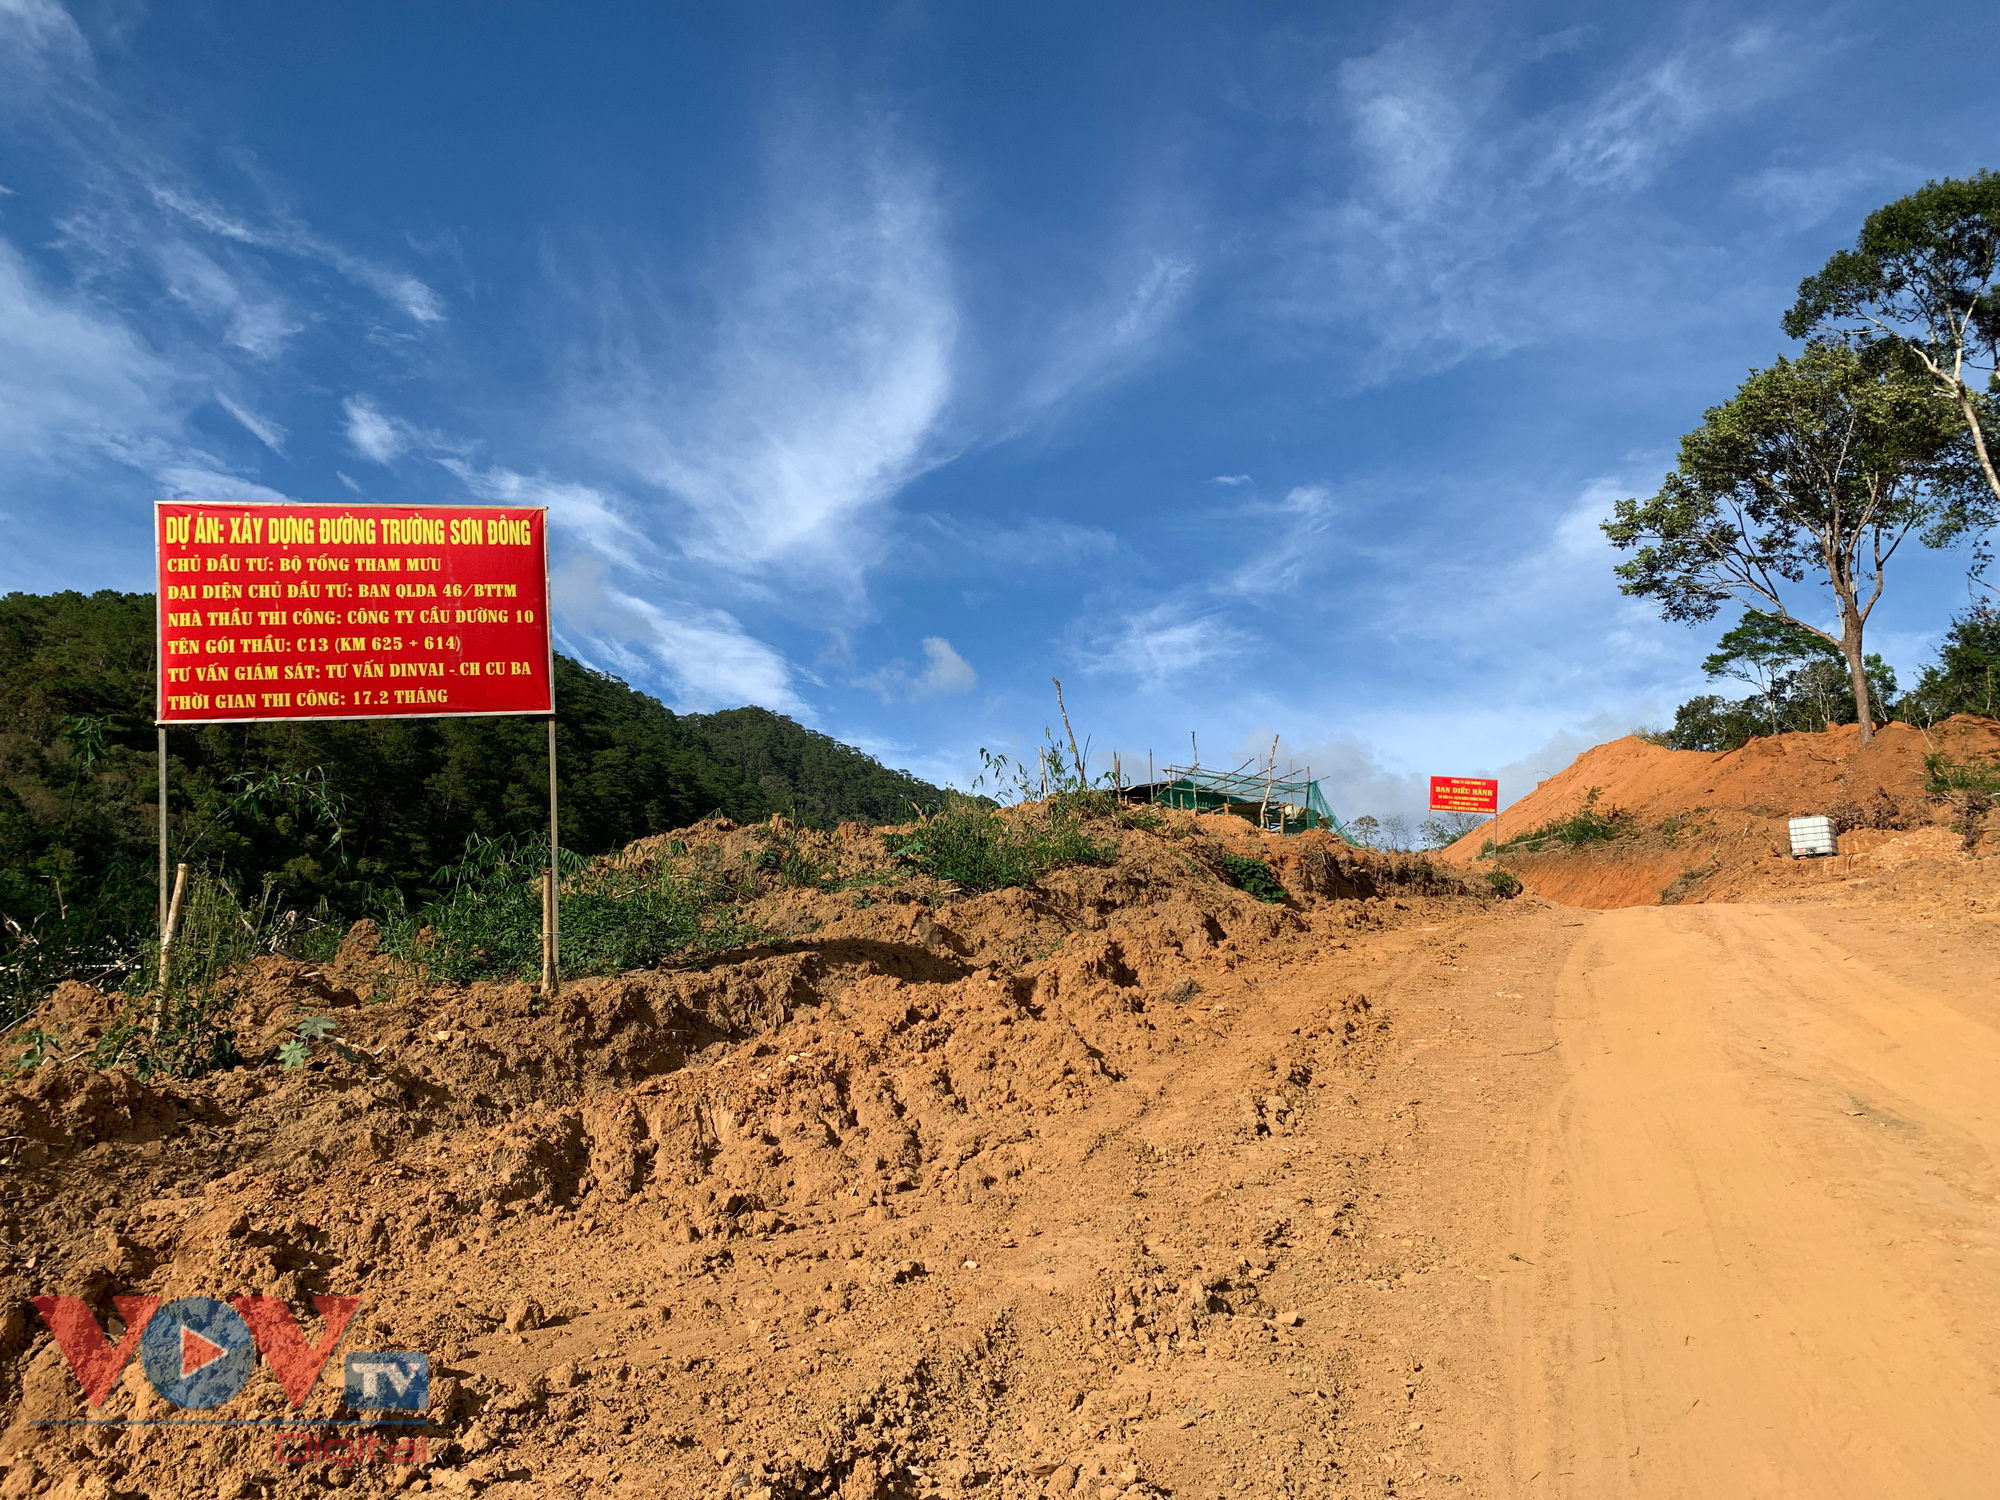 Cận cảnh rừng Quốc gia tại Đắk Lắk, Lâm Đồng bị phá để làm đường khi chưa được phép - Ảnh 6.